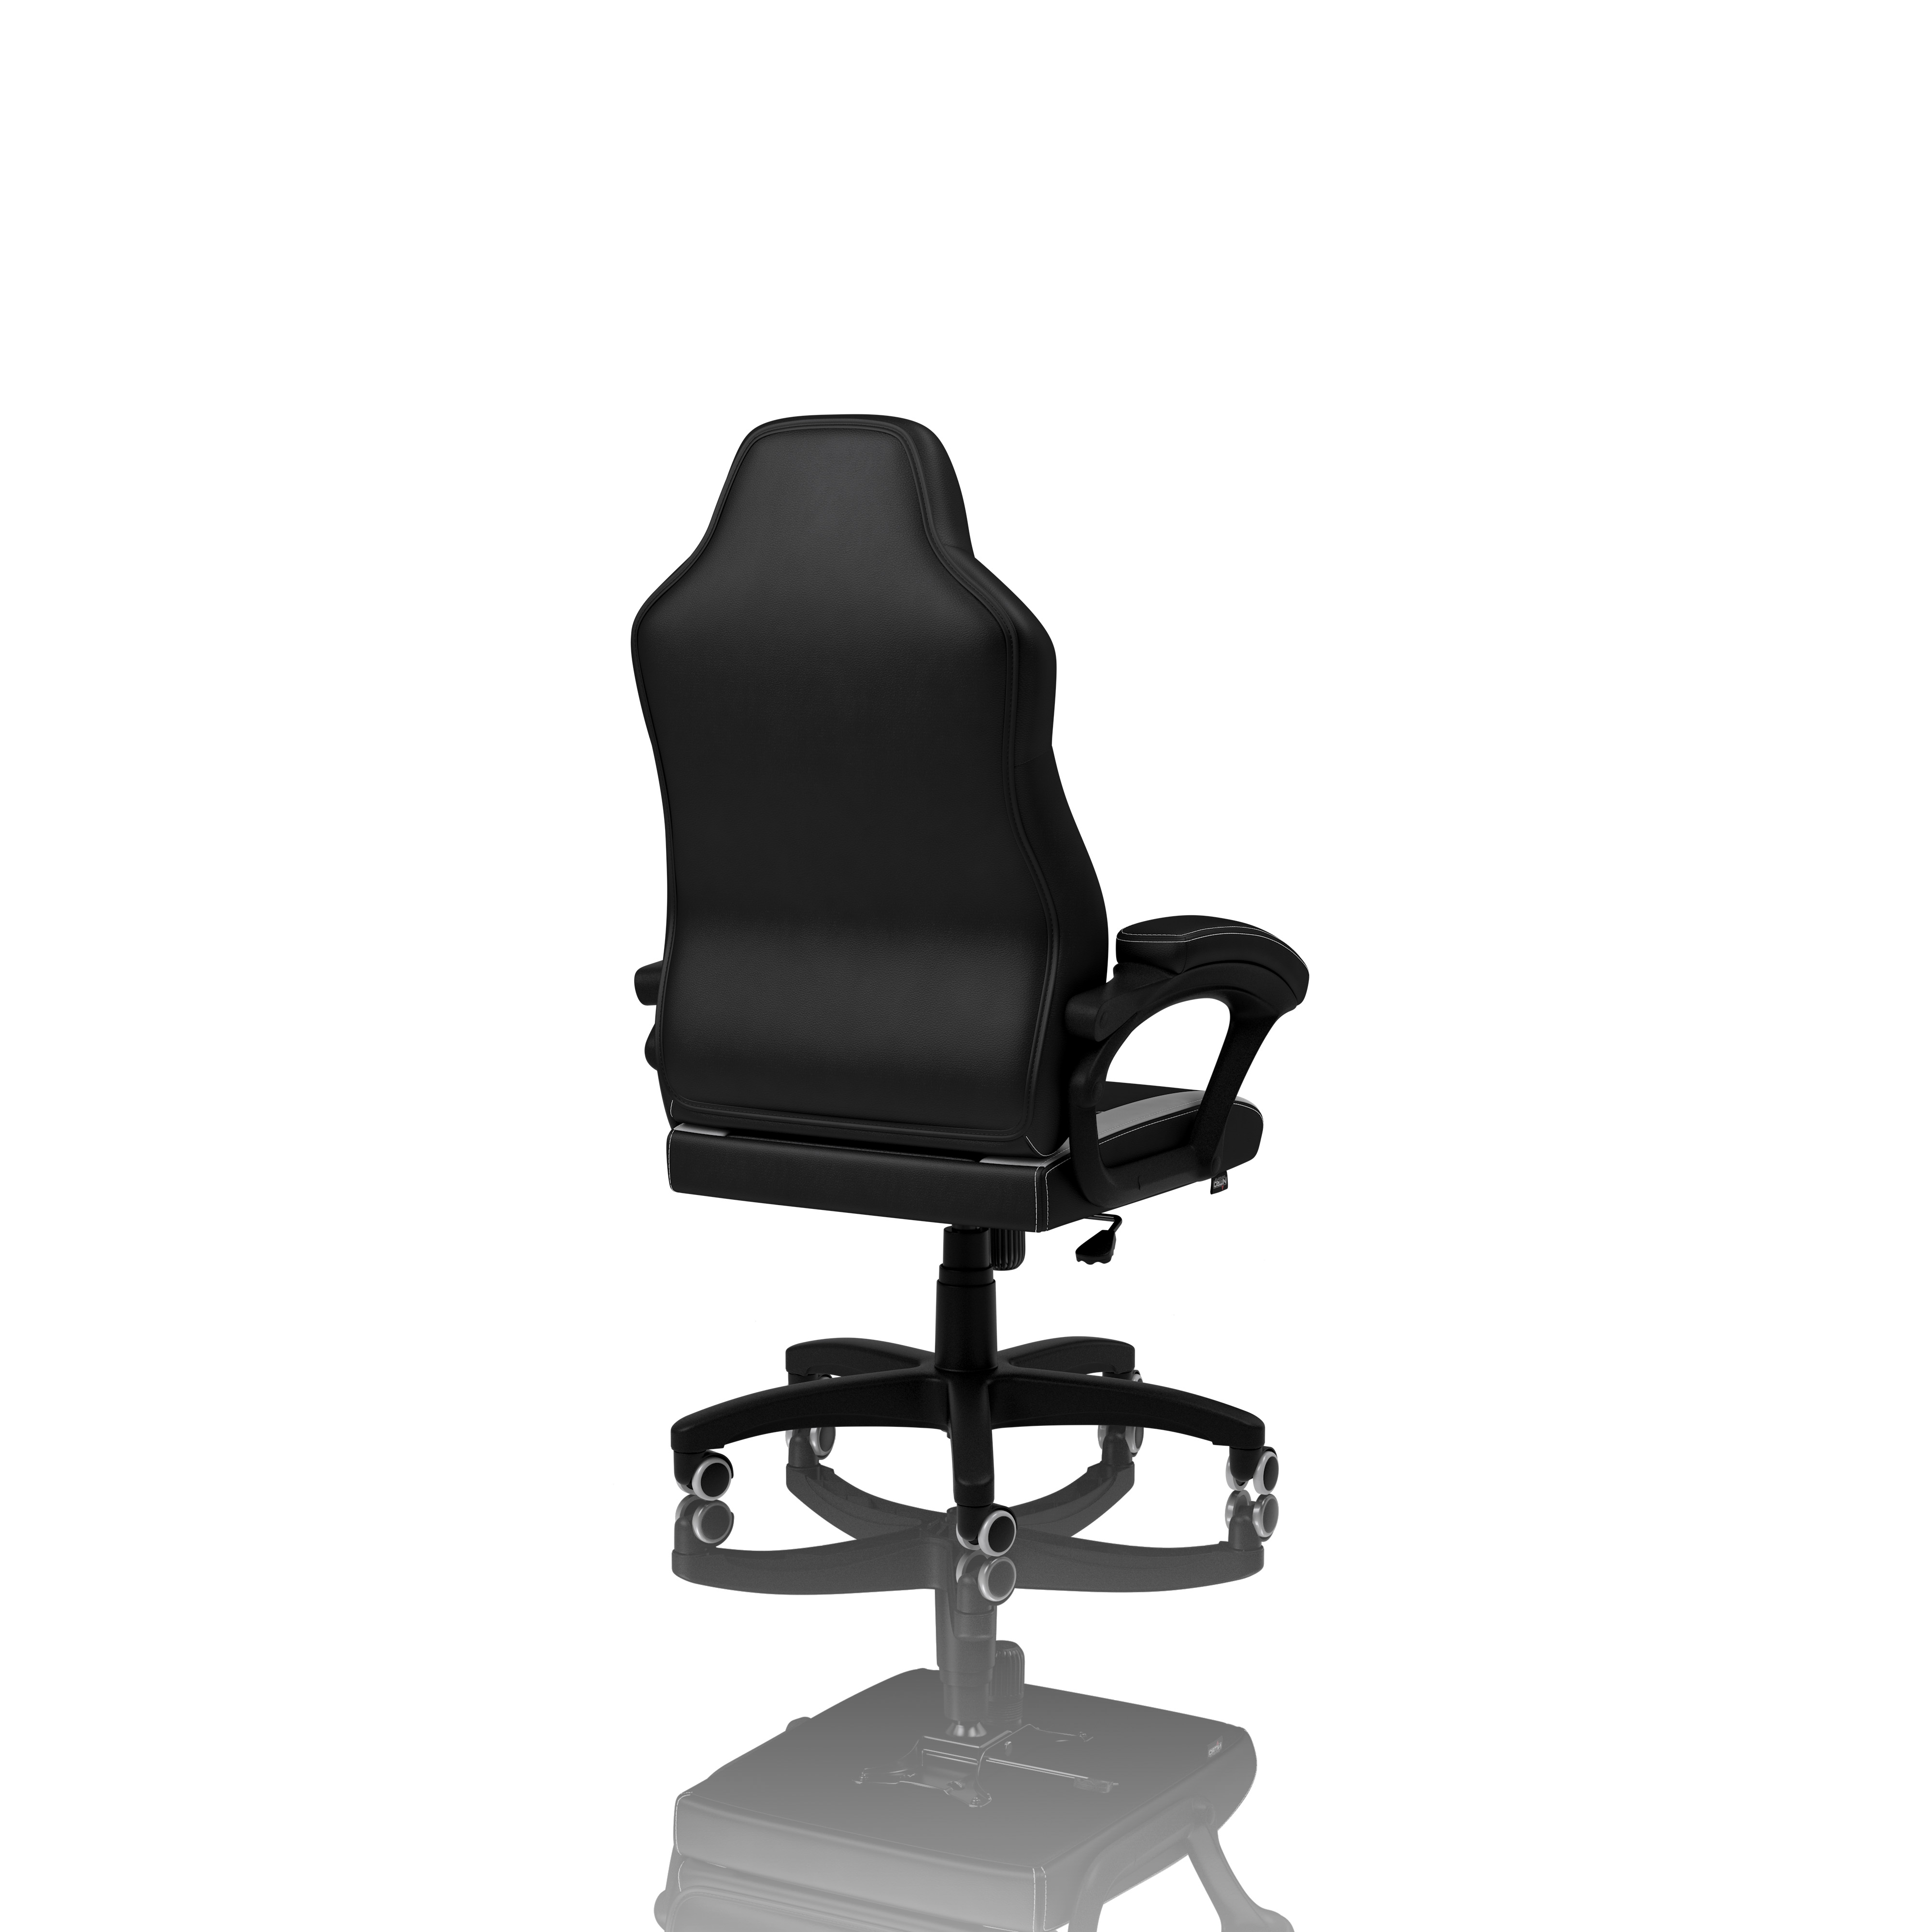 Nitro Concepts - C100 Gaming Stuhl schwarz/weiß